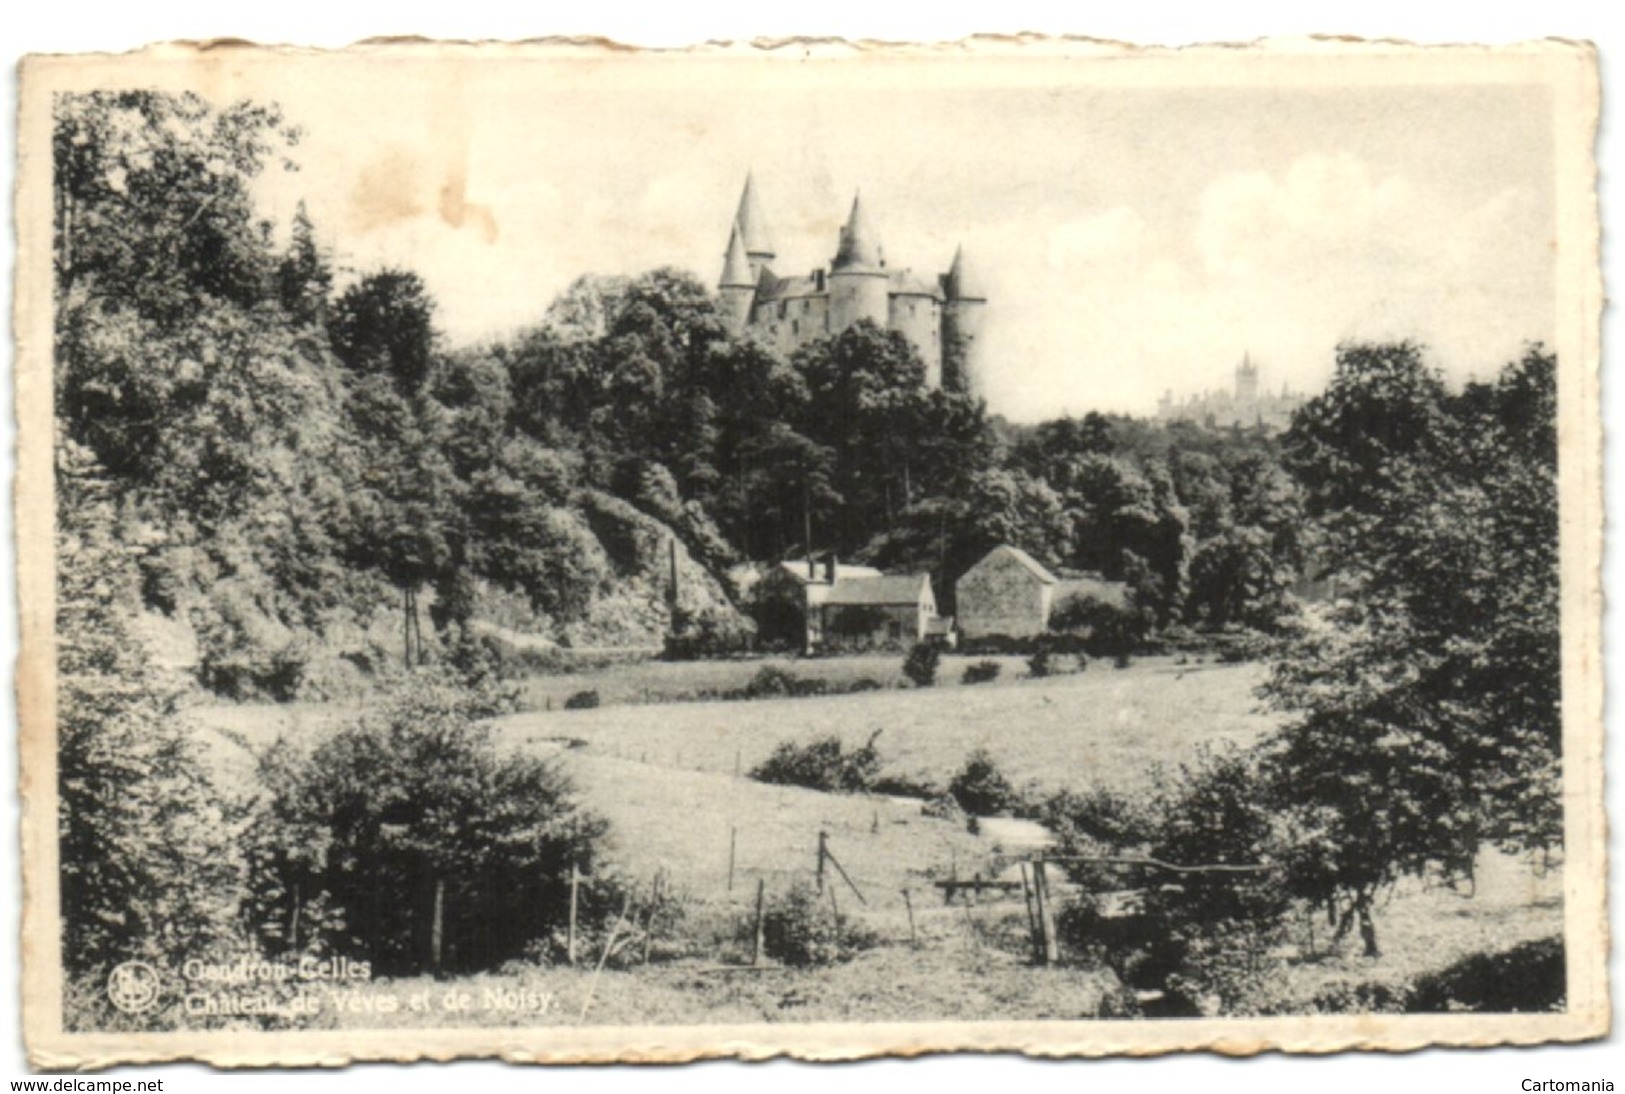 Gendron-Celles - Château De Vêves Et De Noisy - Houyet